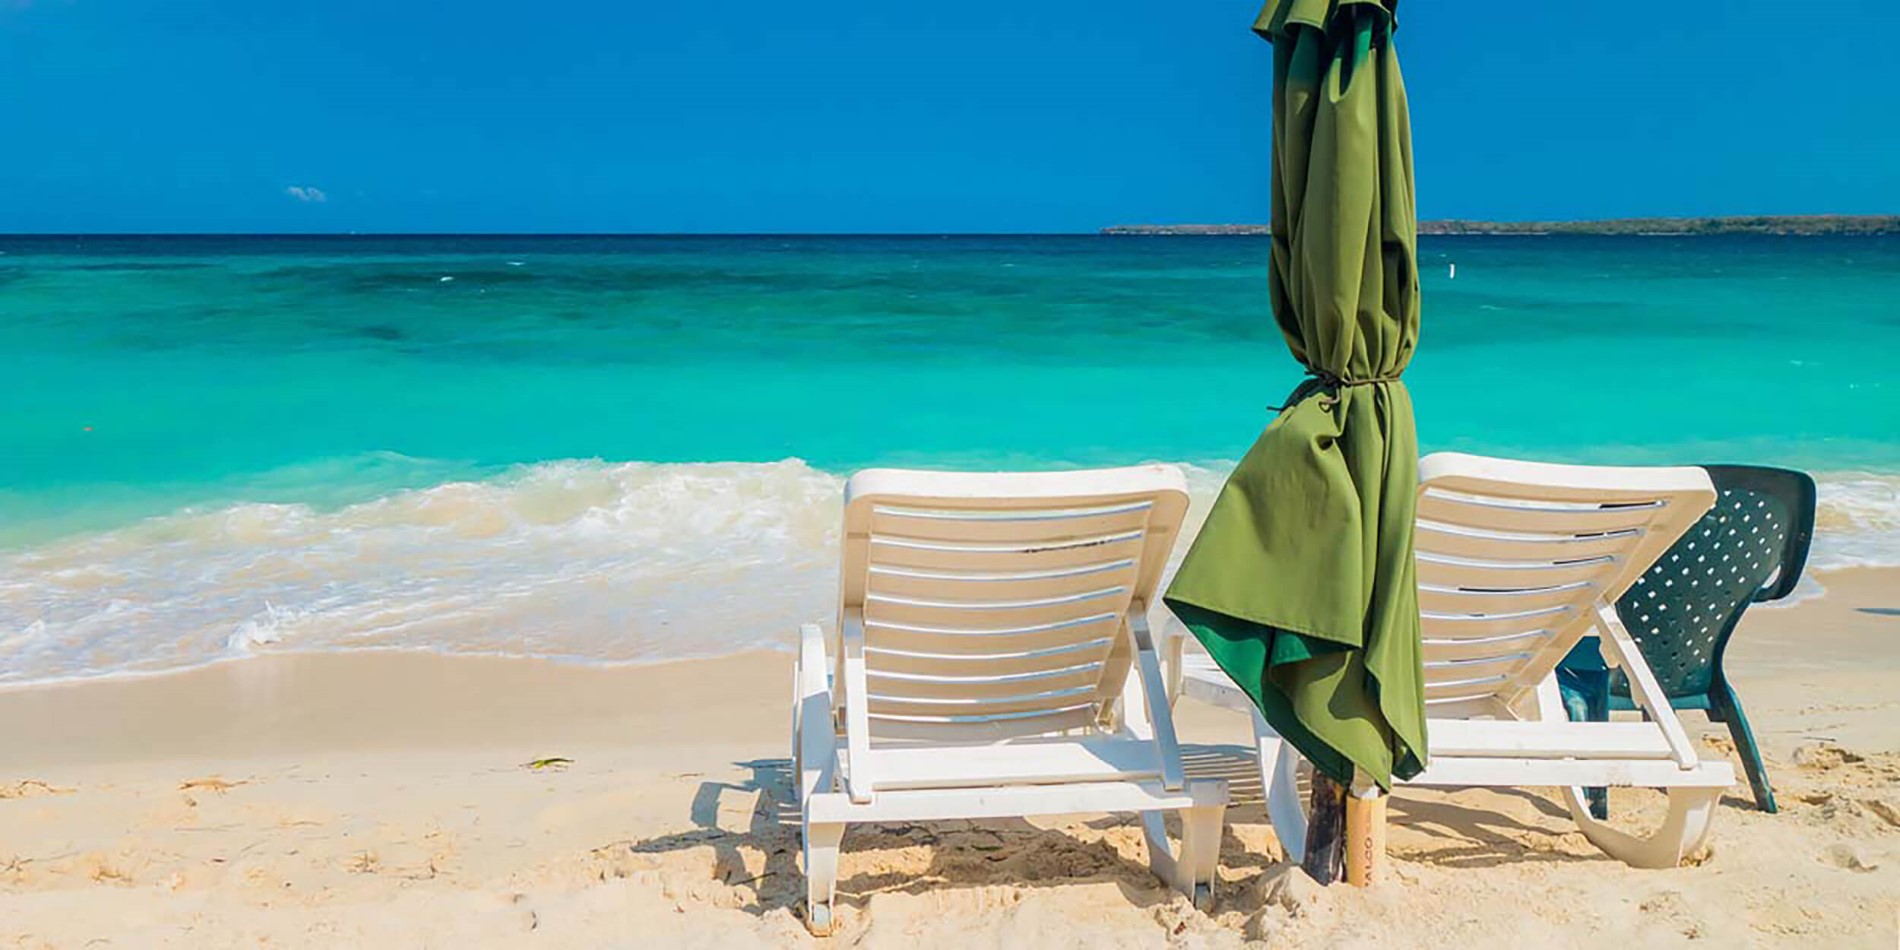 En stol som sitter framför en strand